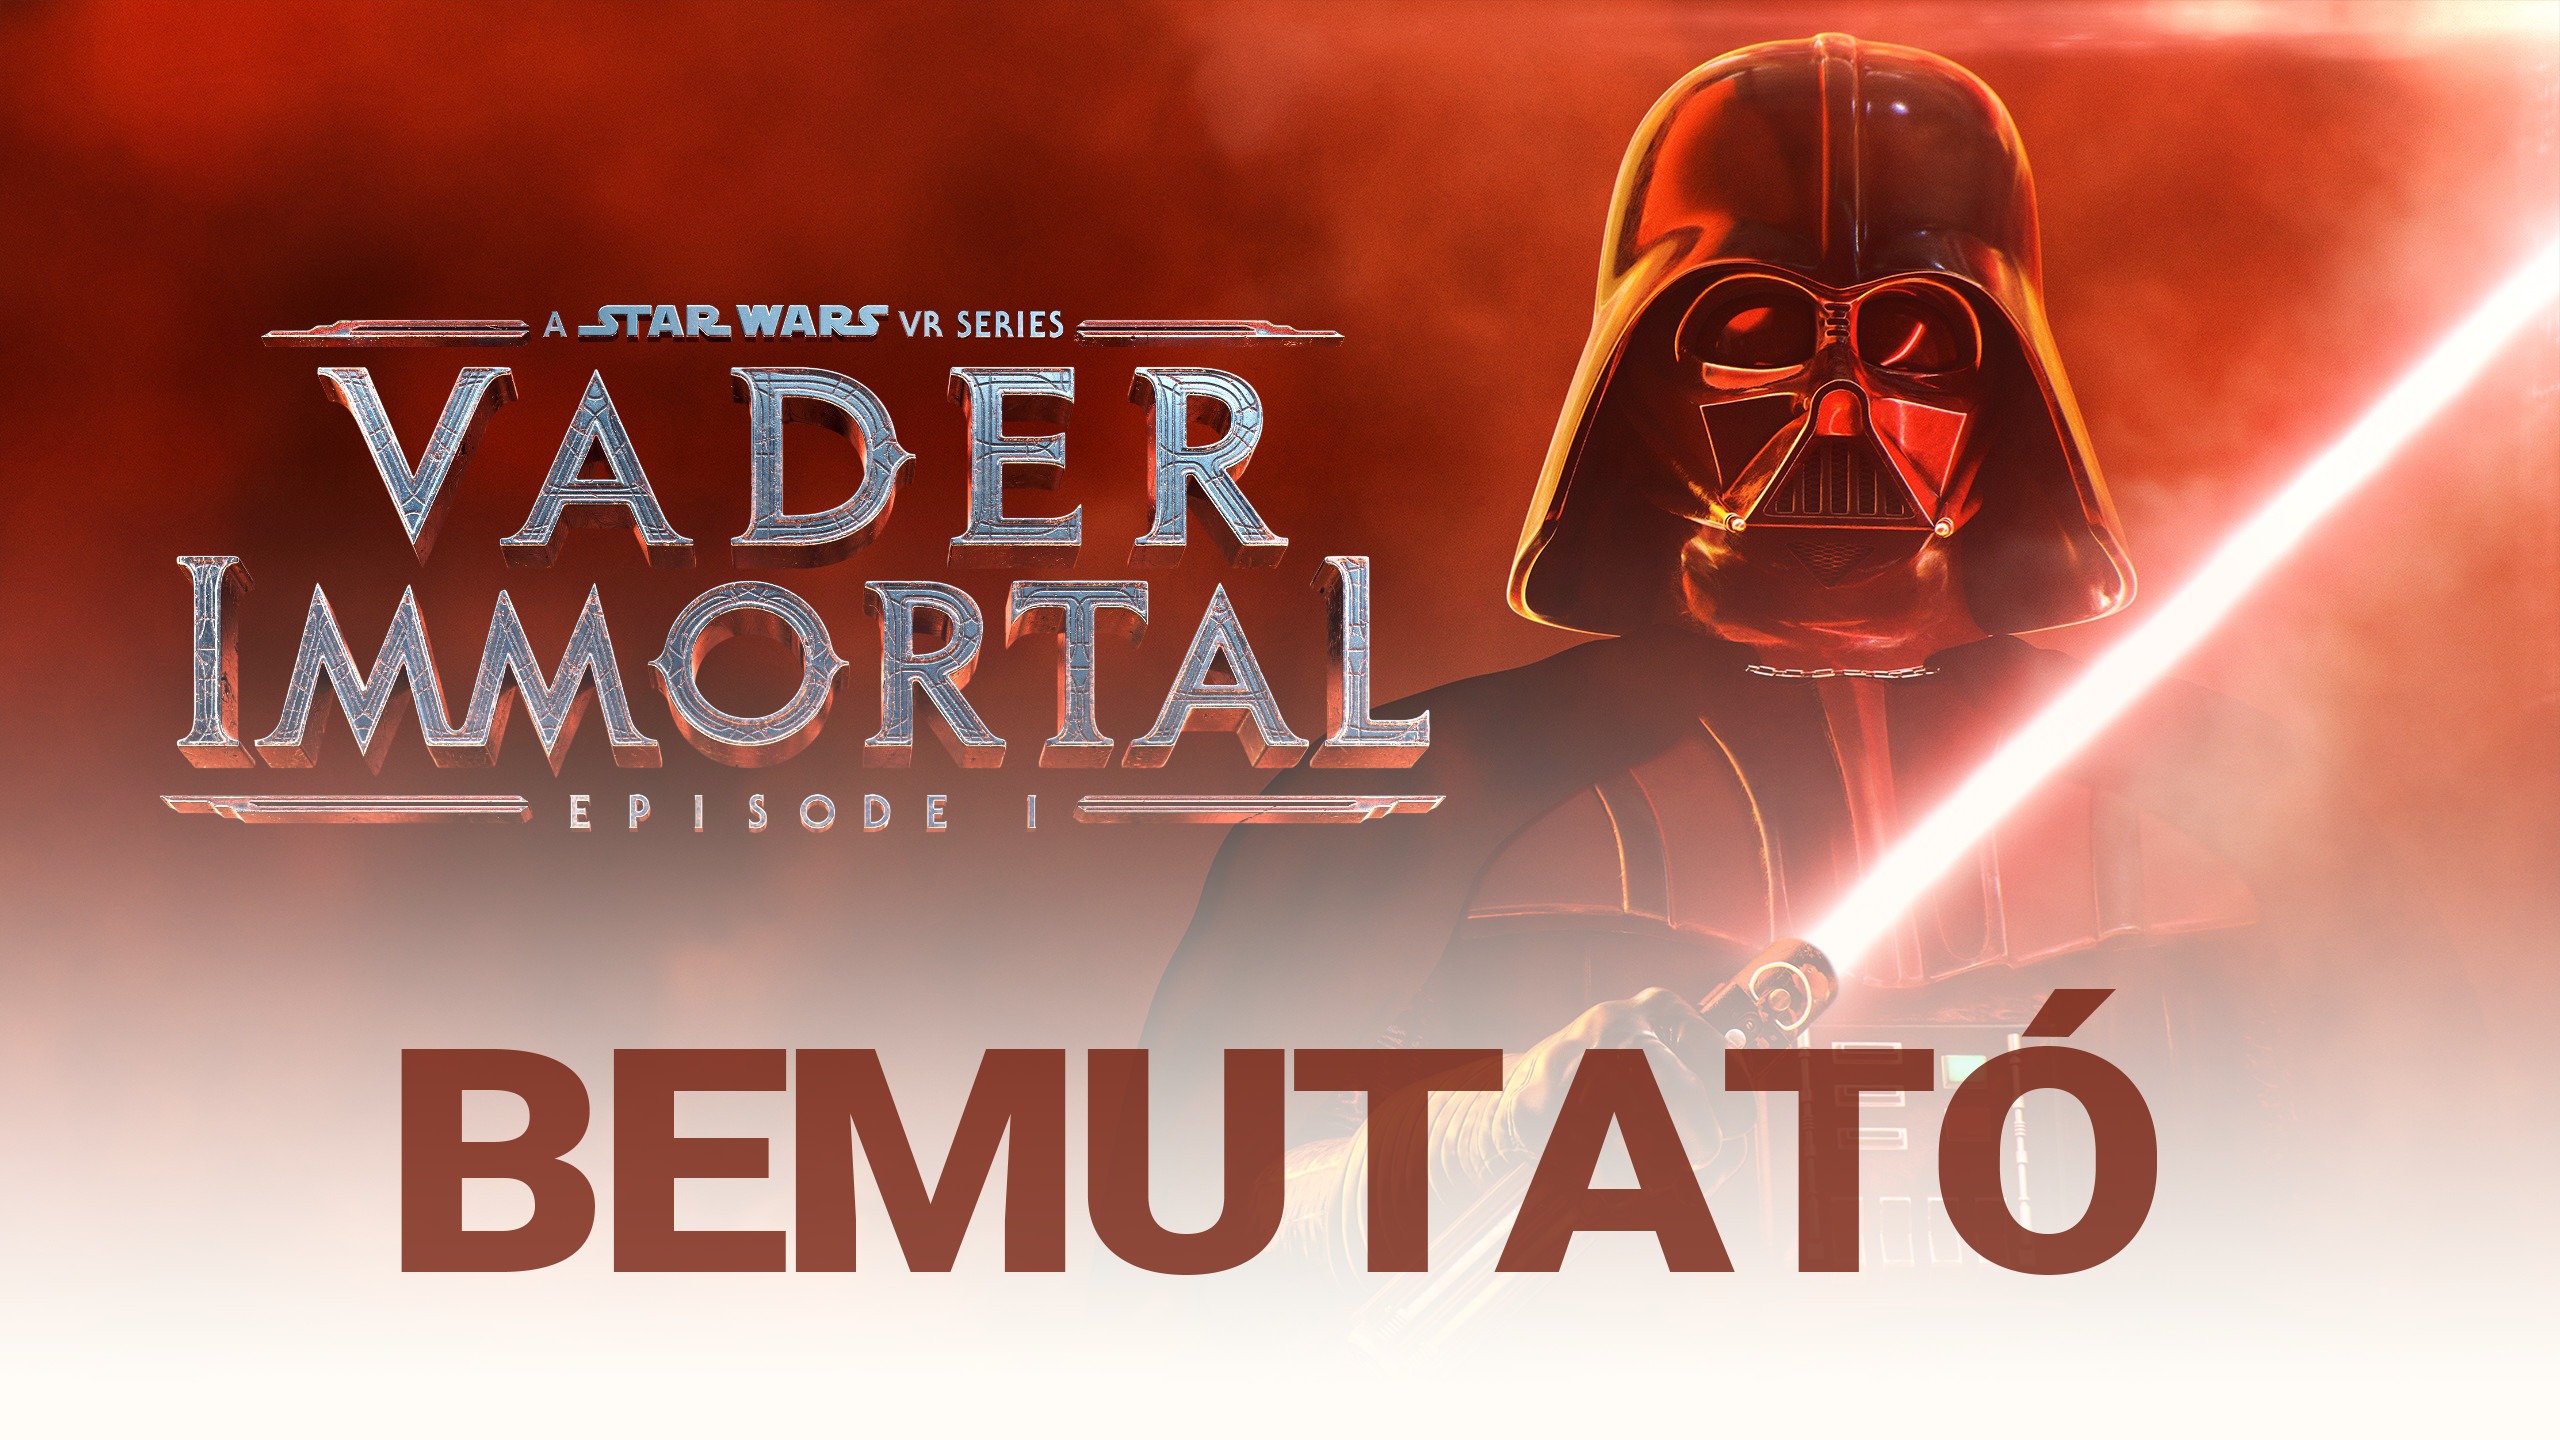 STAR WARS – Vader Immortal Episode 1 Bemutató